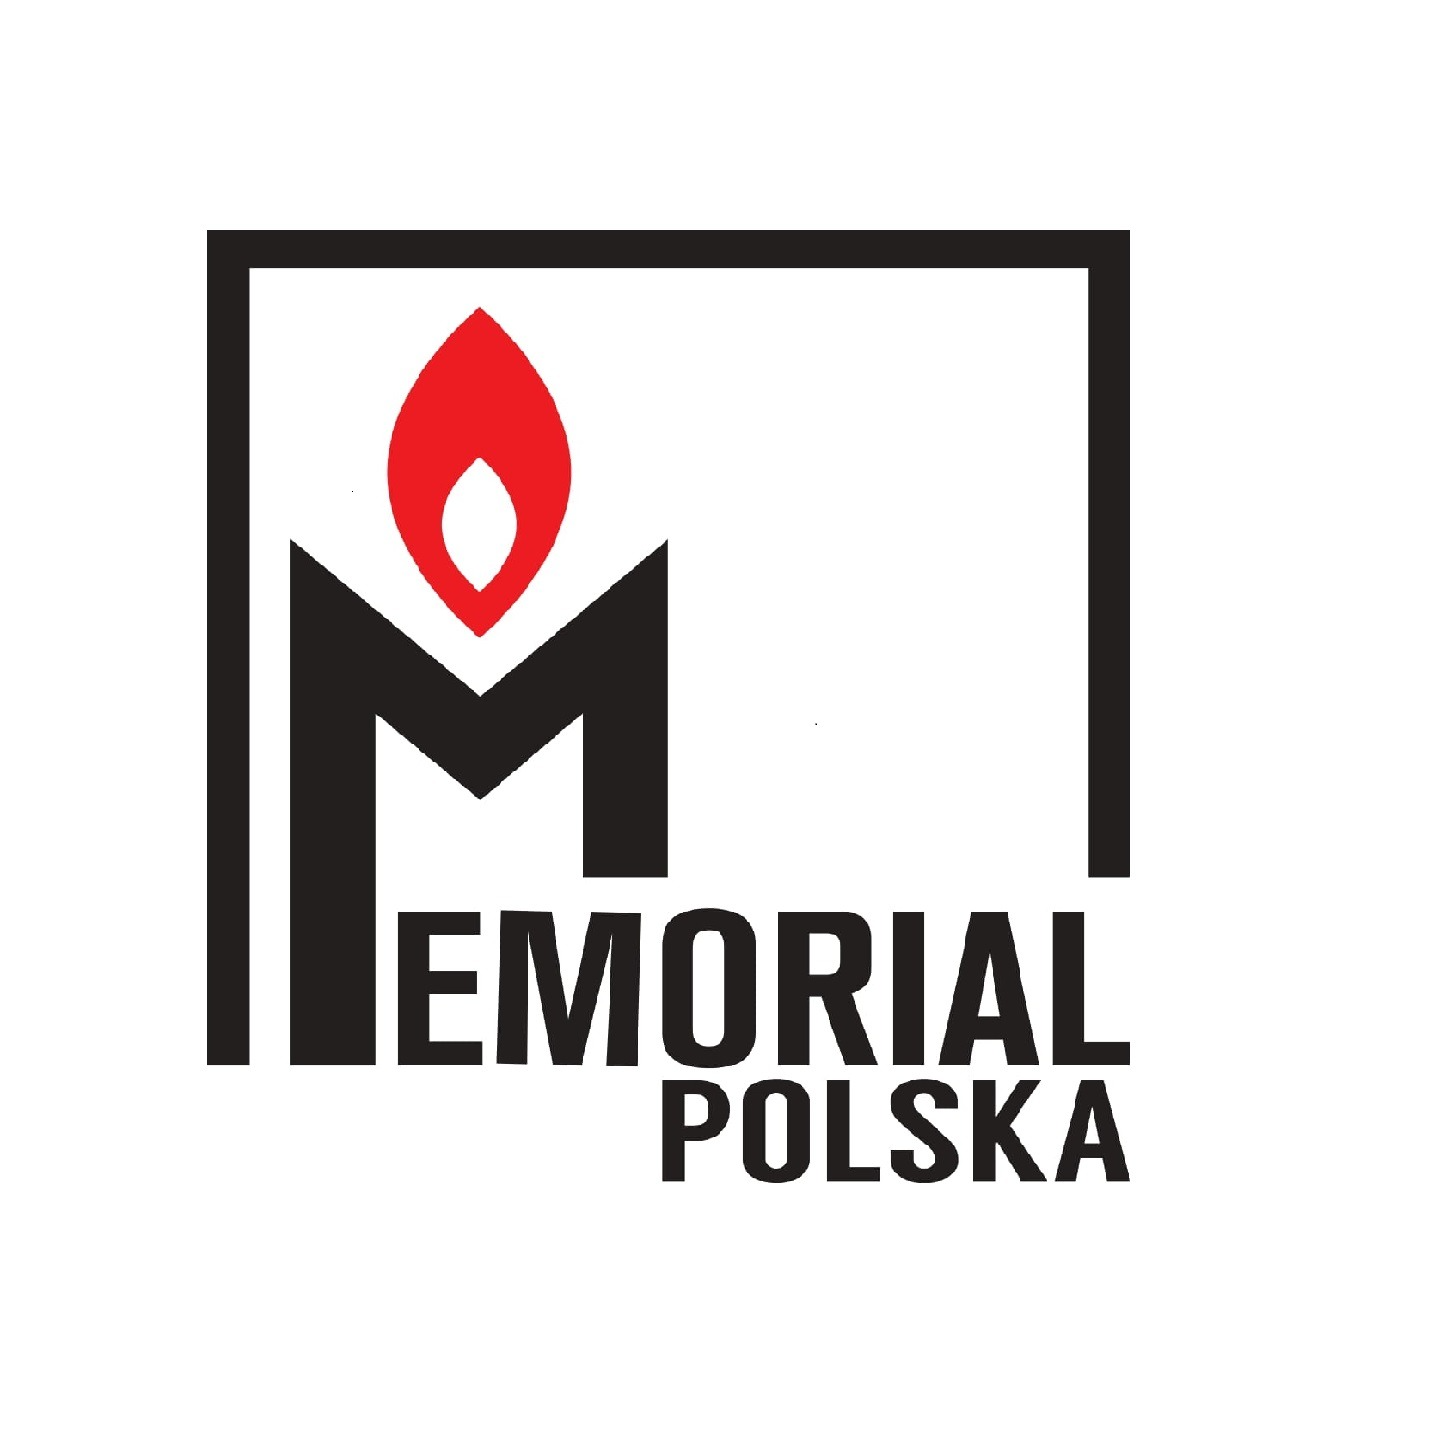 Memoriał Polska logo